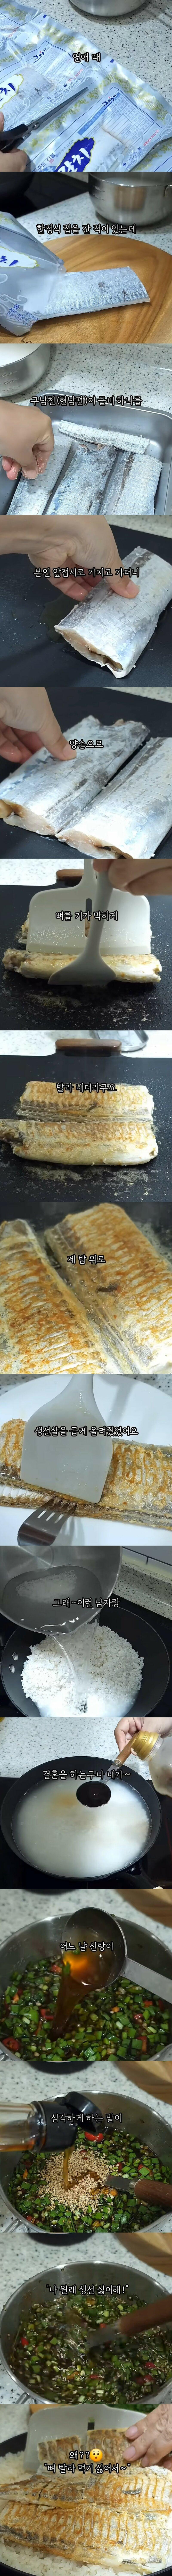 생선뼈 발라주던 전남친의 비밀.jpg